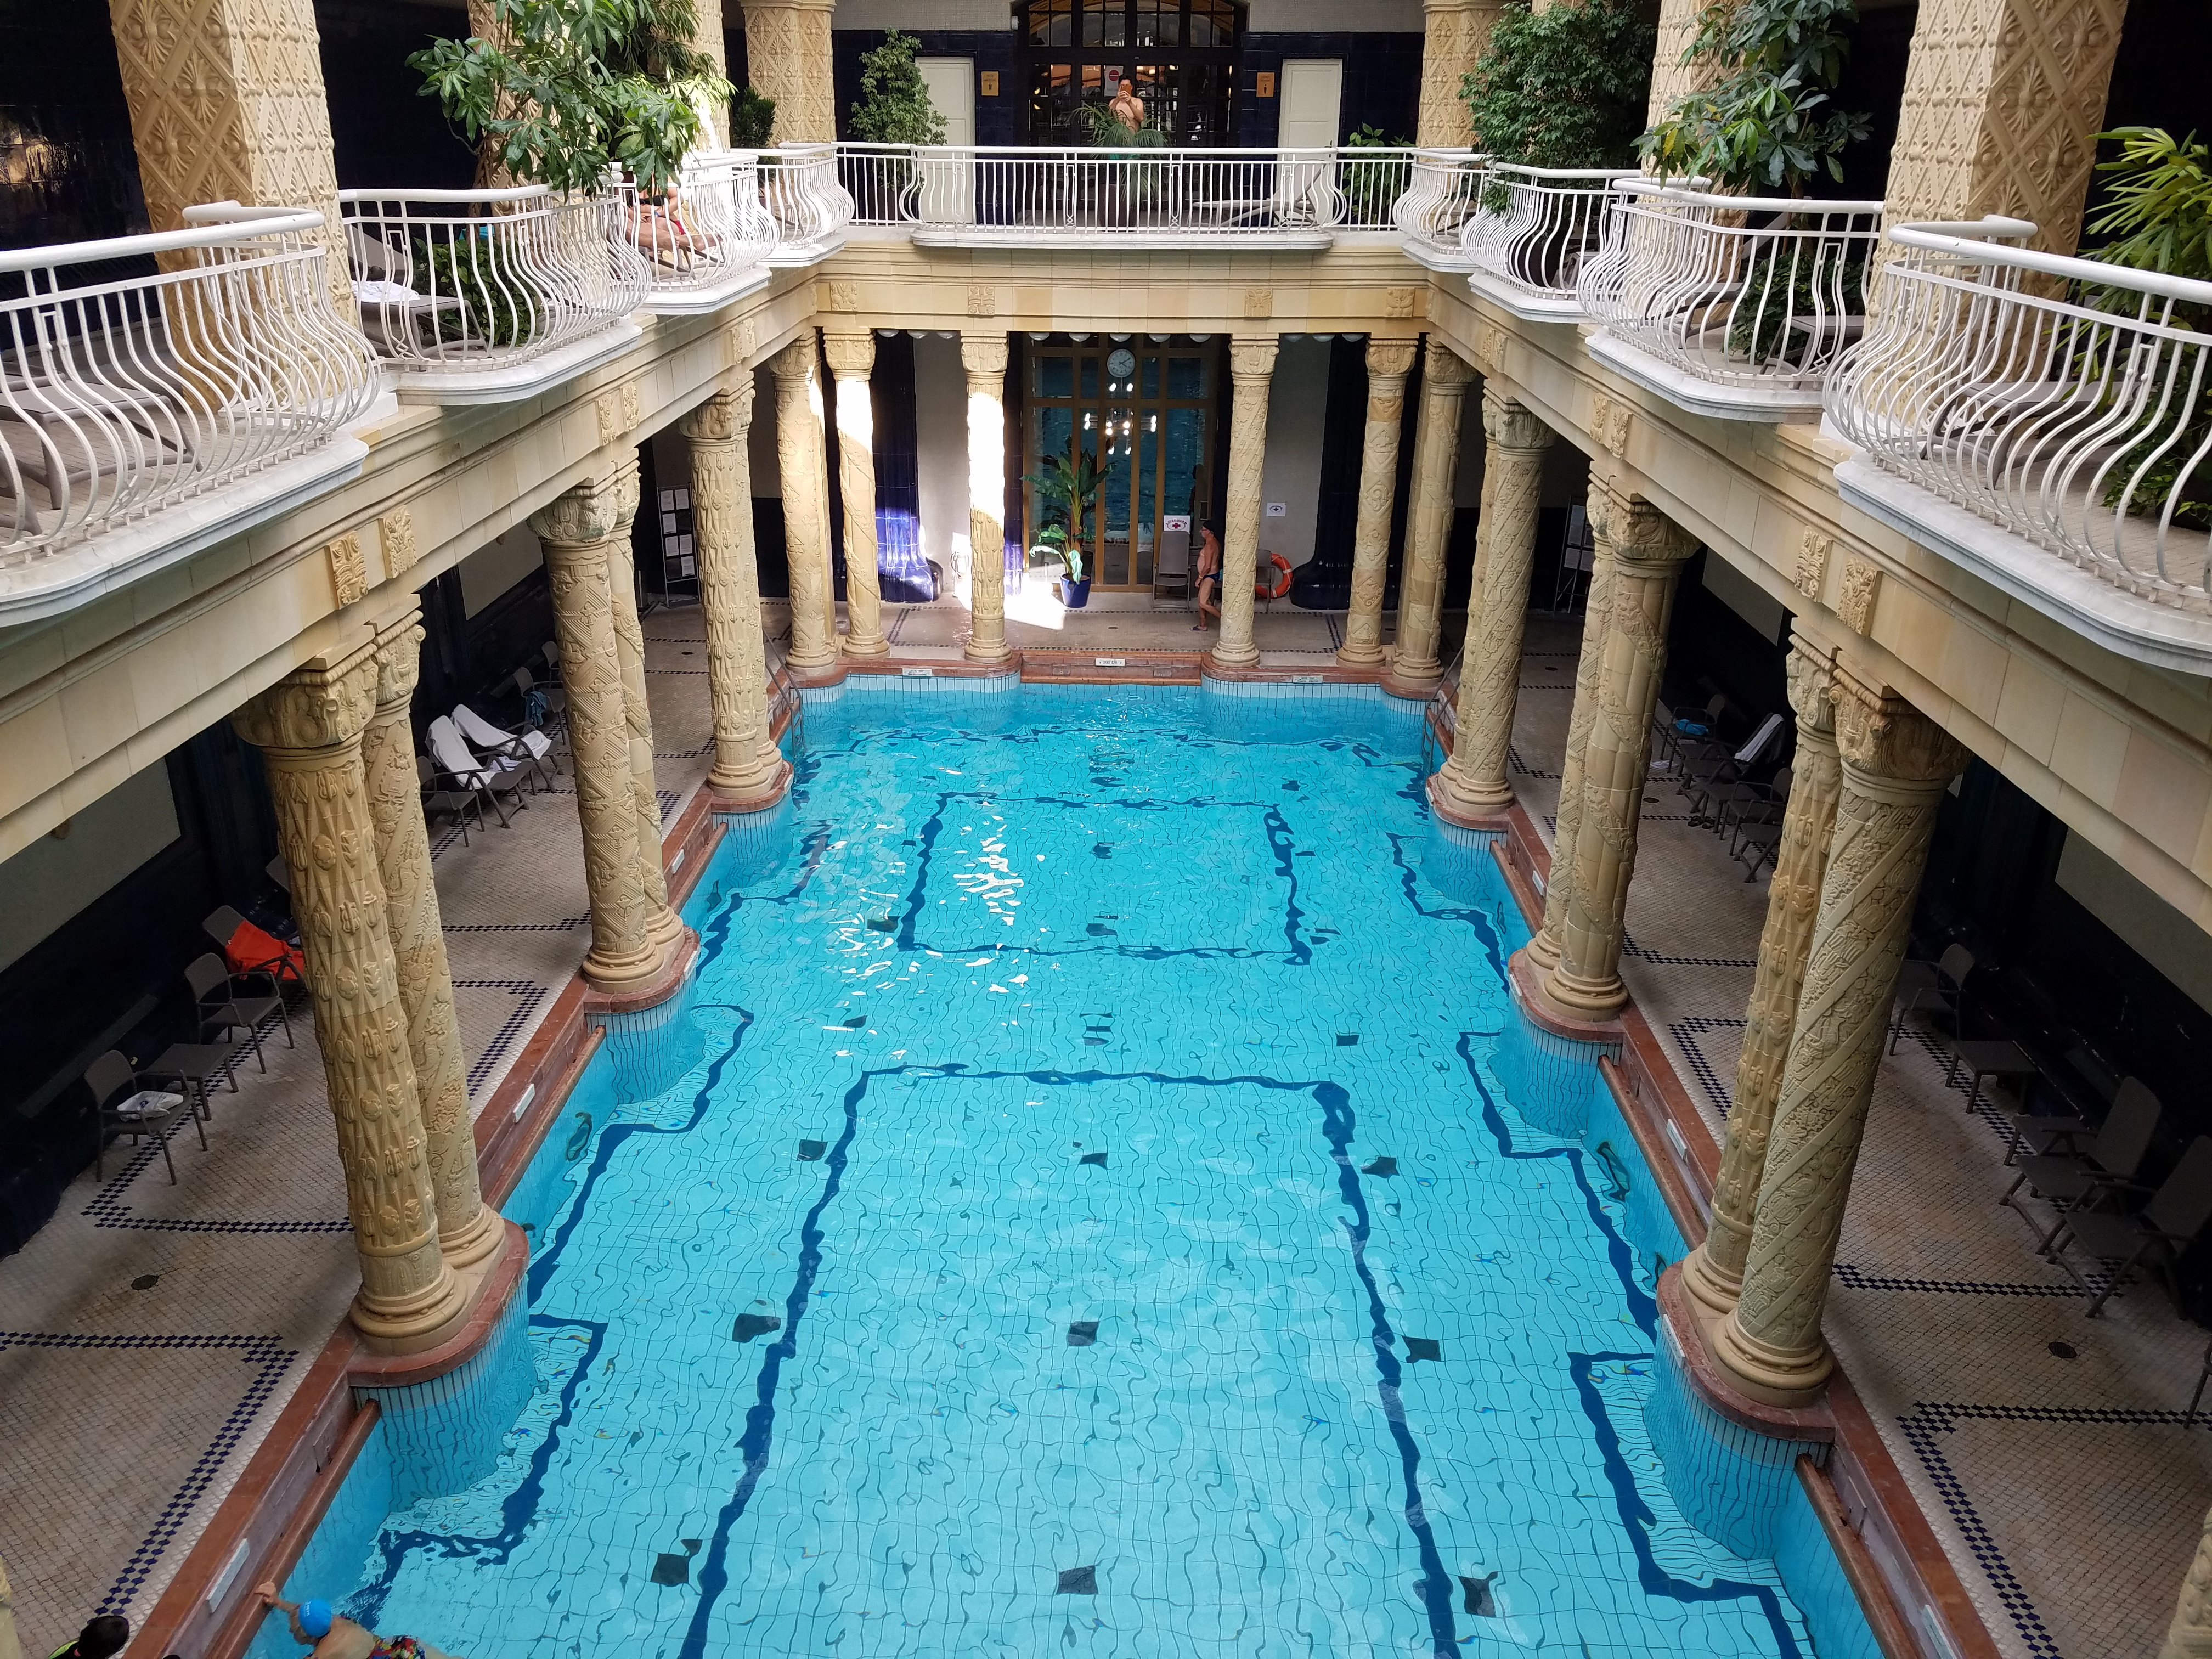 Budapest Baths for Solo Travel: Gellert vs. Rudas